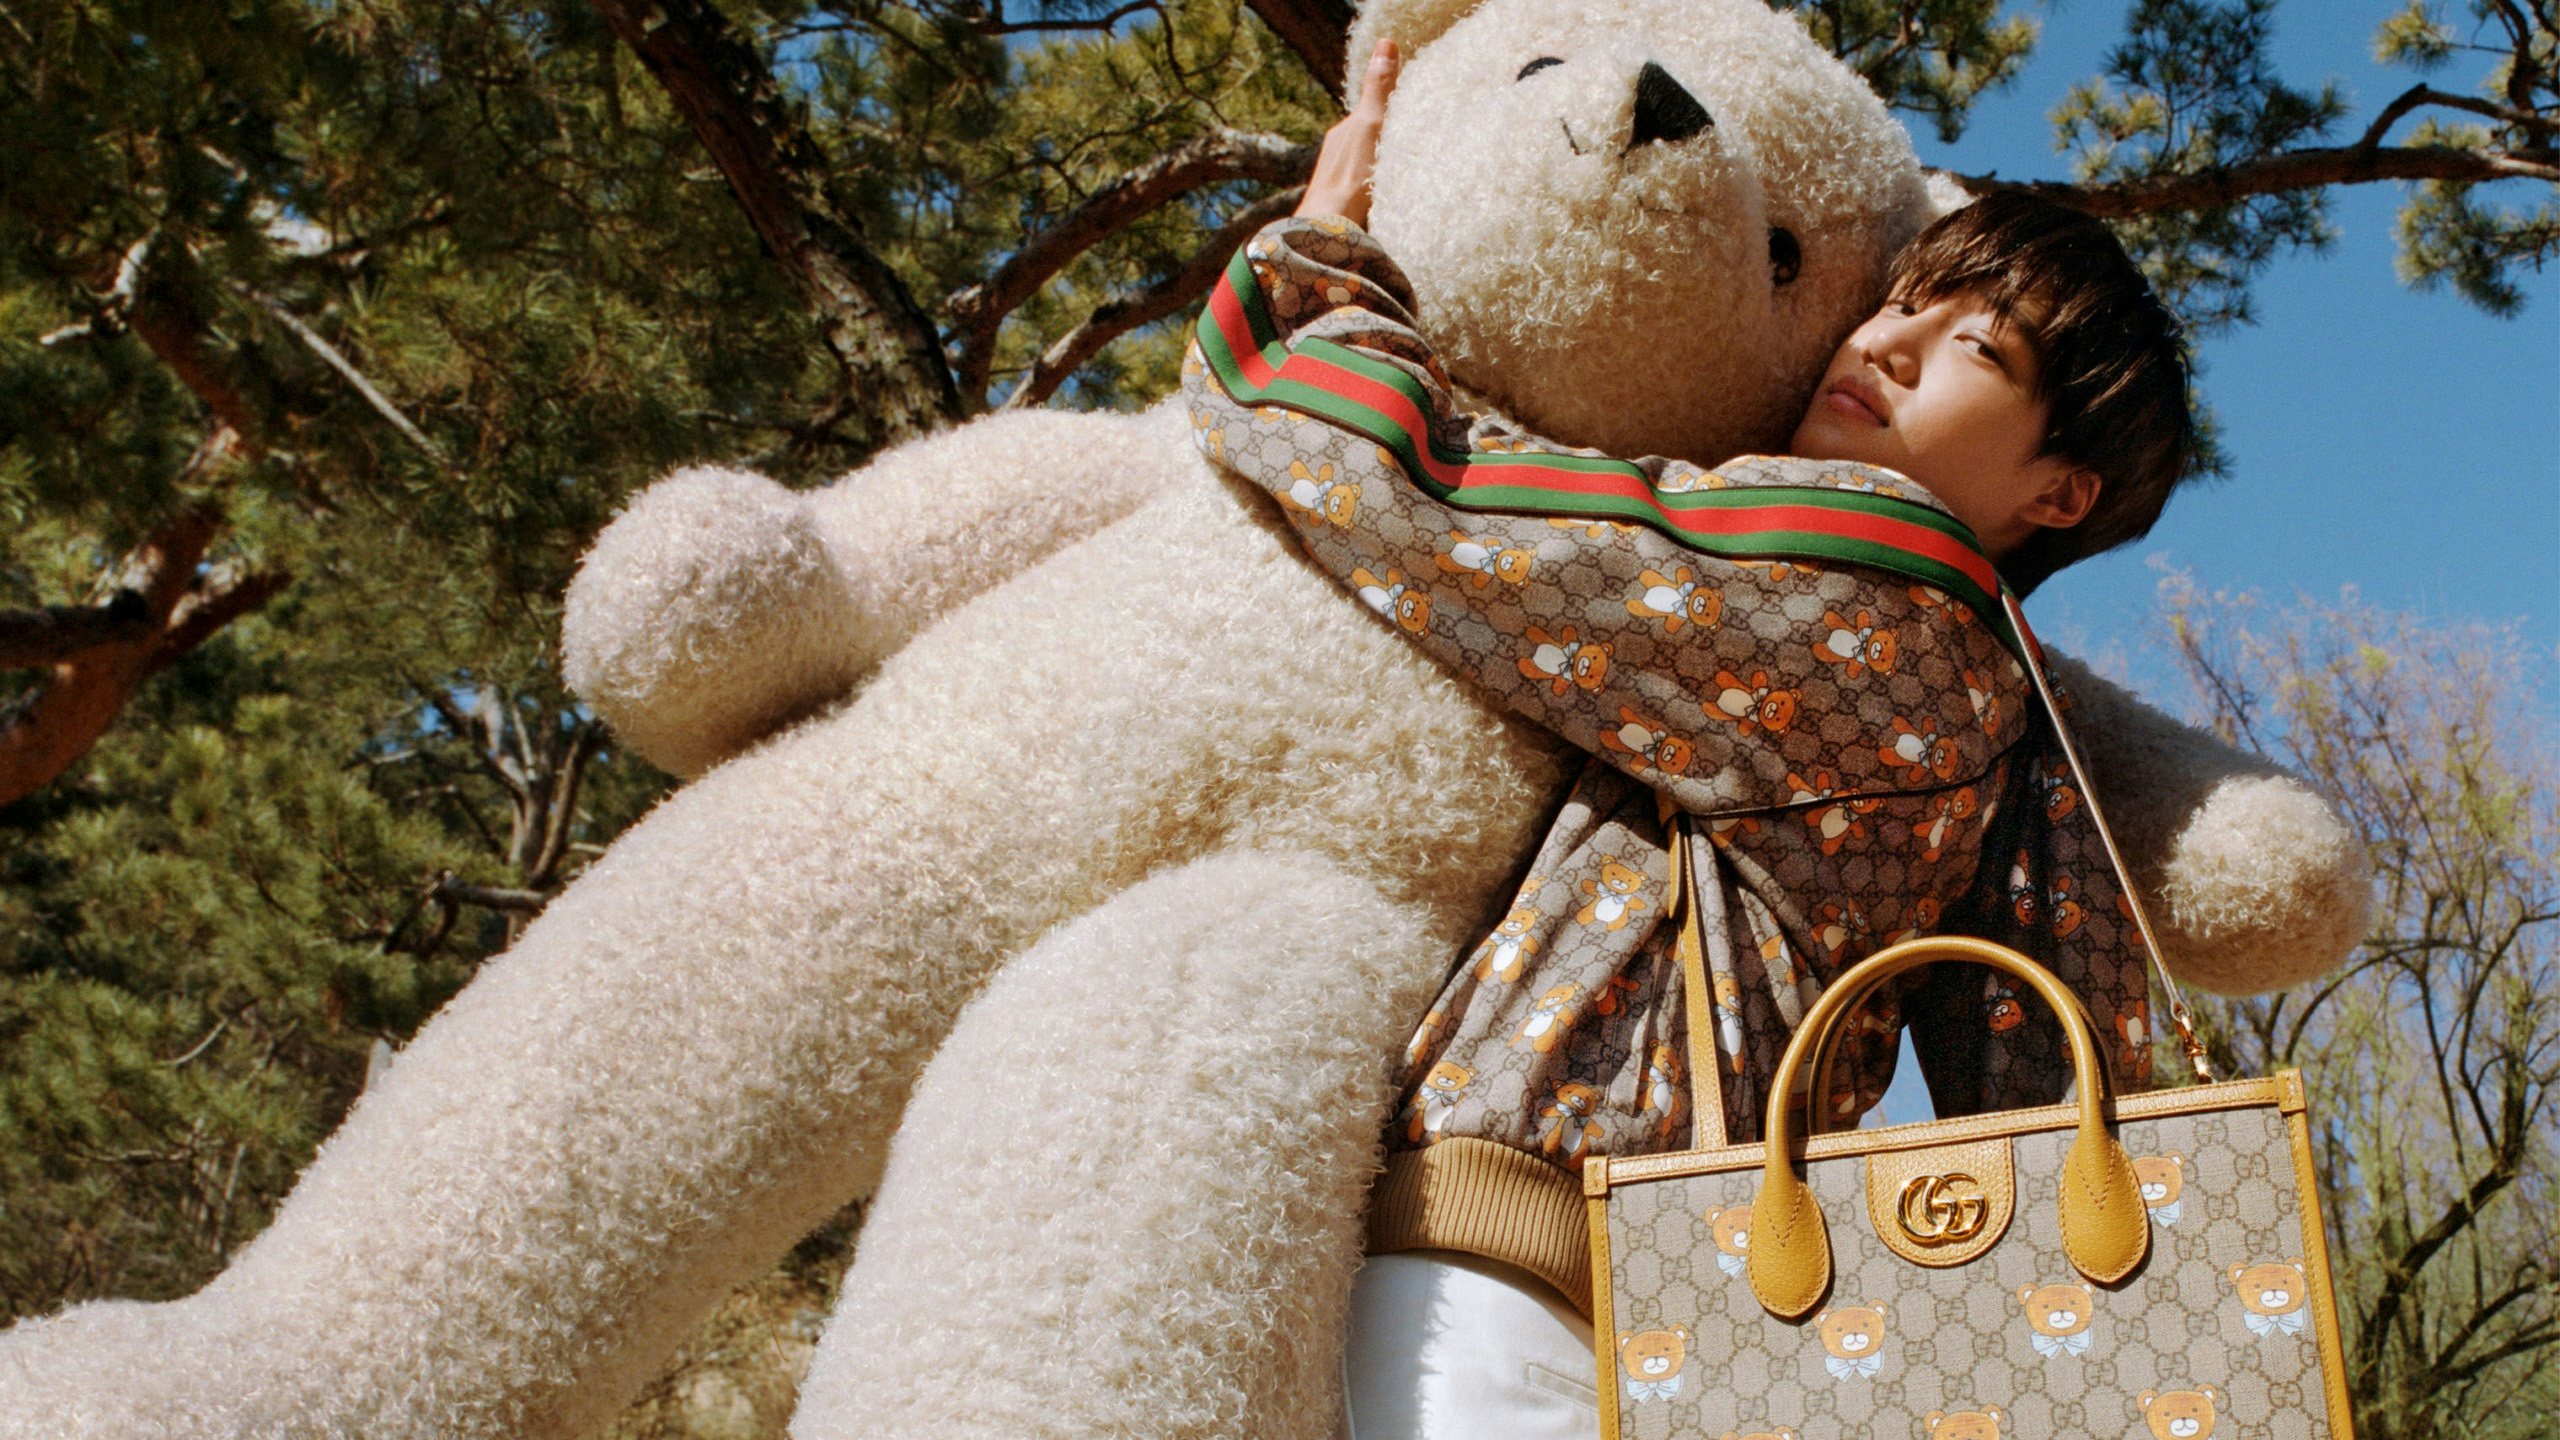 Pretty woman hug a giant teddy bear doll. Fashion girl